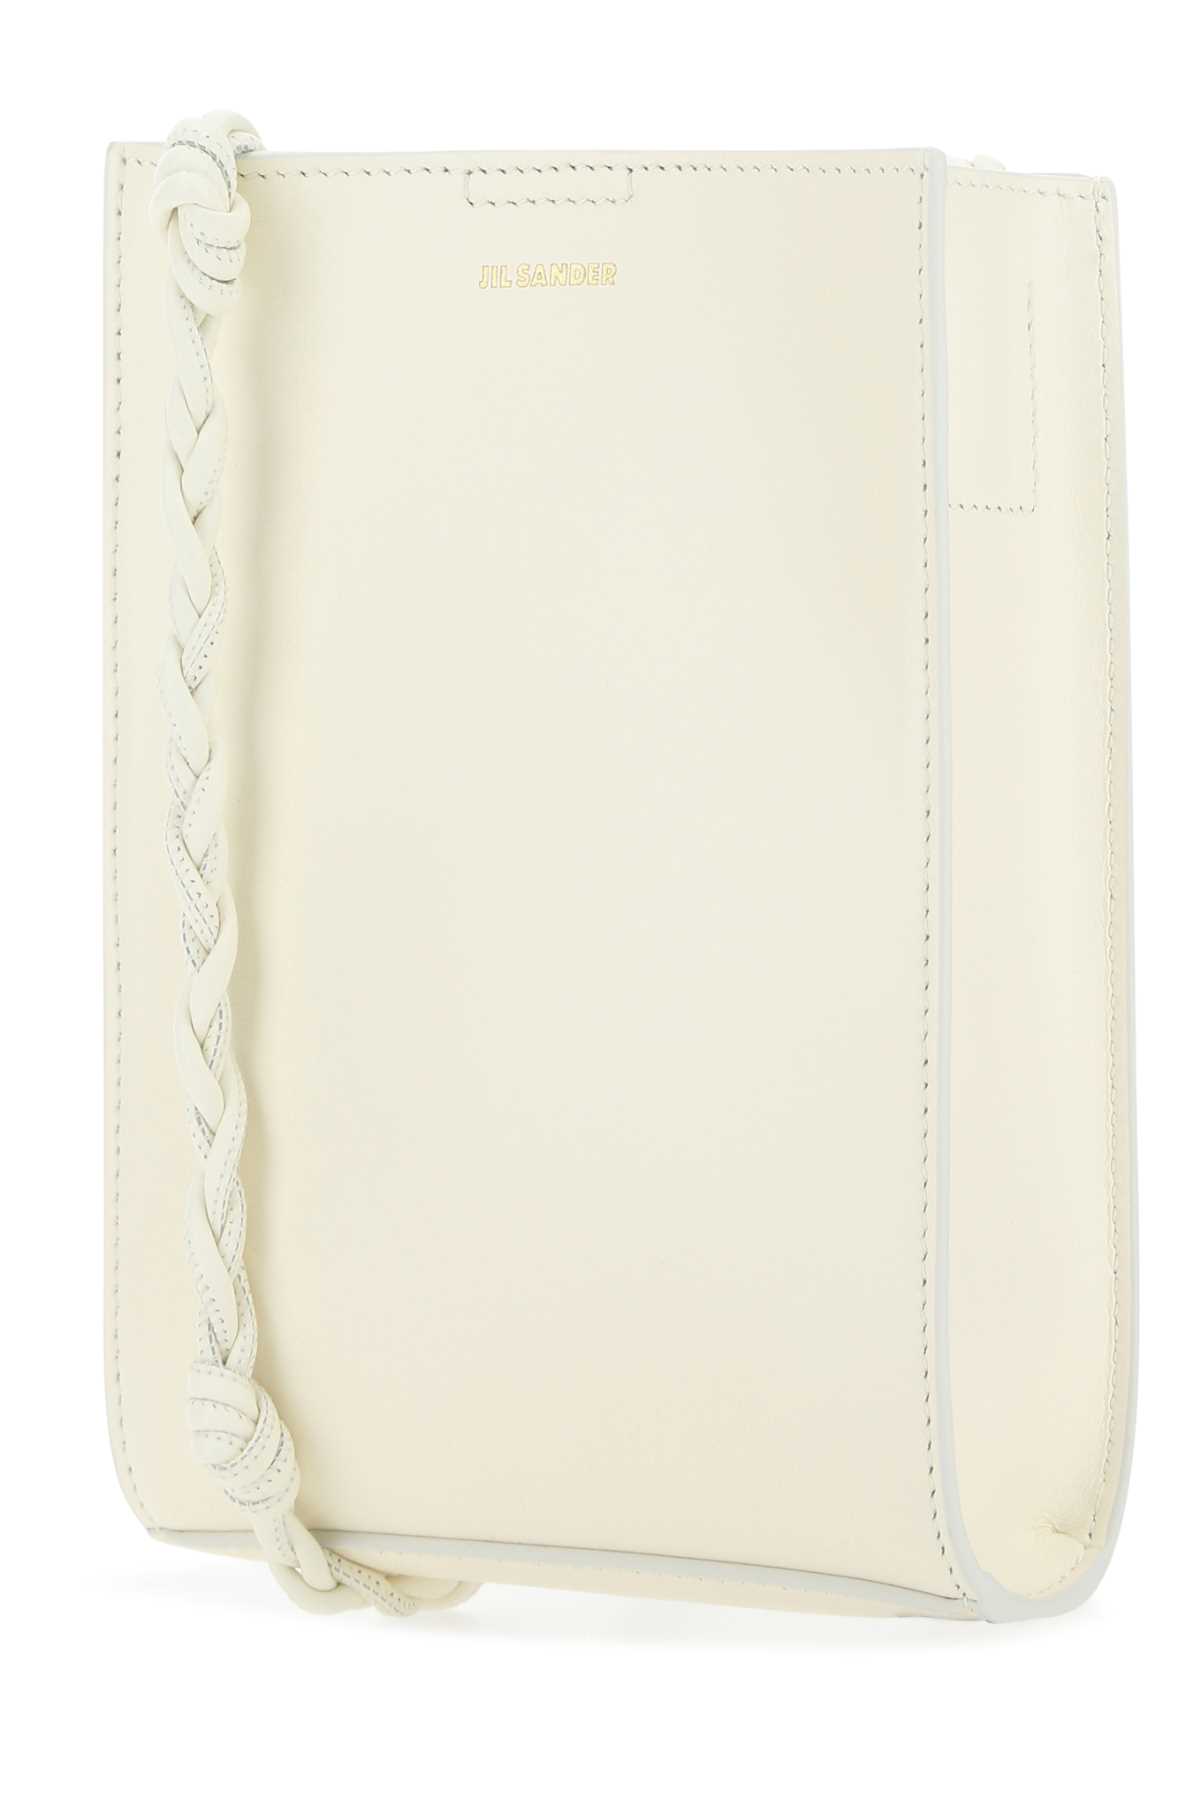 Jil Sander Ivory Leather Small Tangle Shoulder Bag In 106